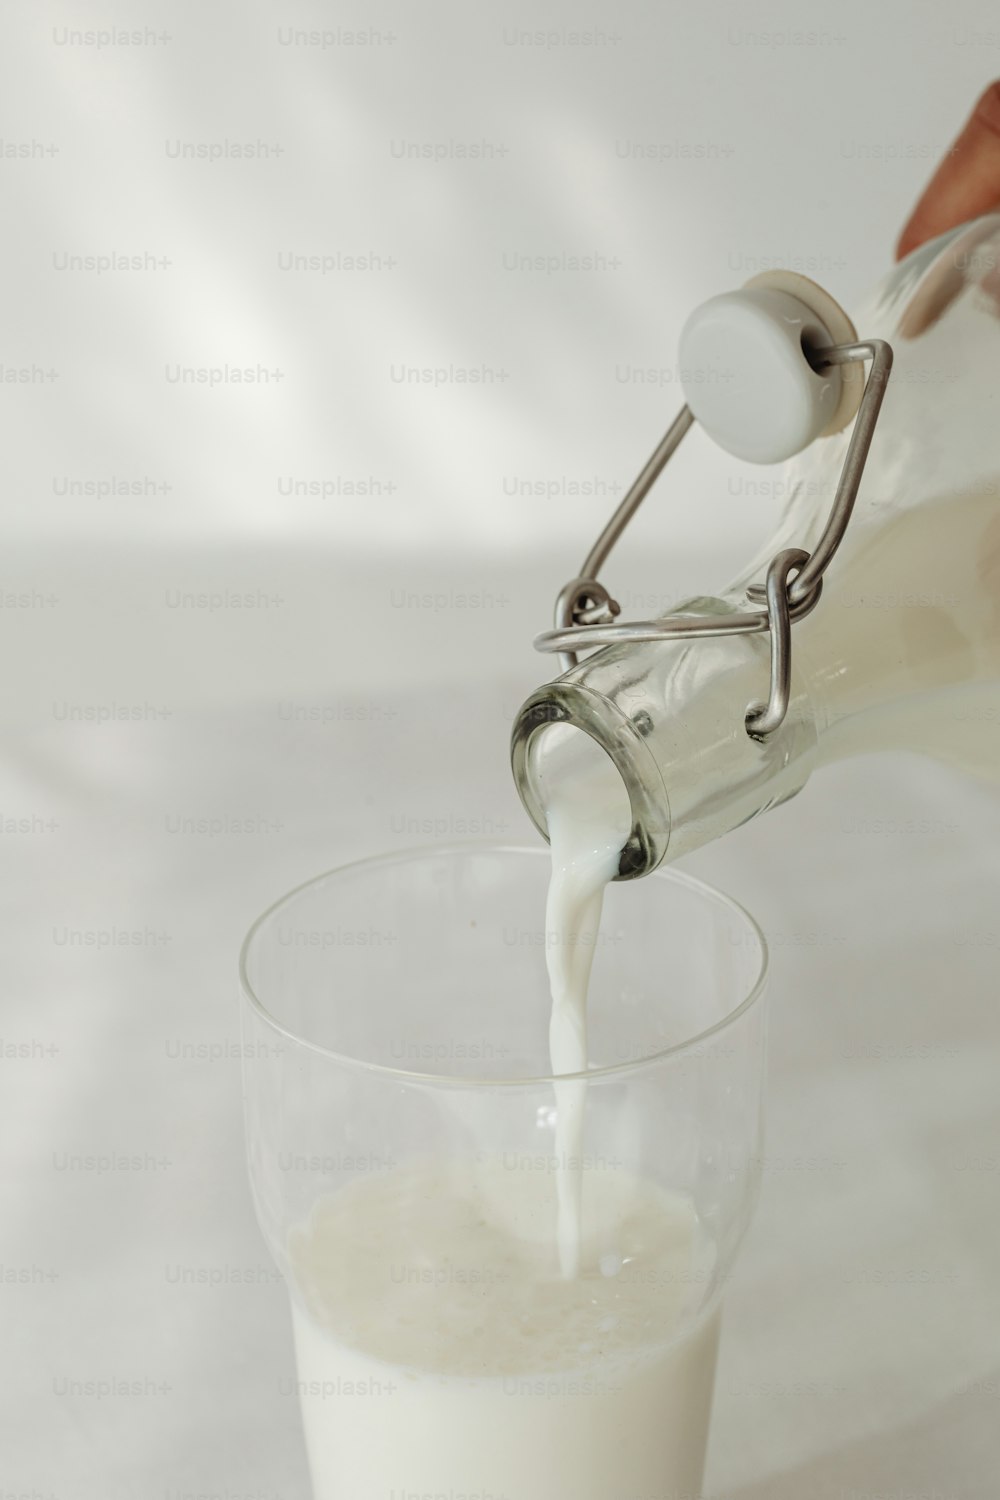 eine Person, die Milch in ein Glas gießt